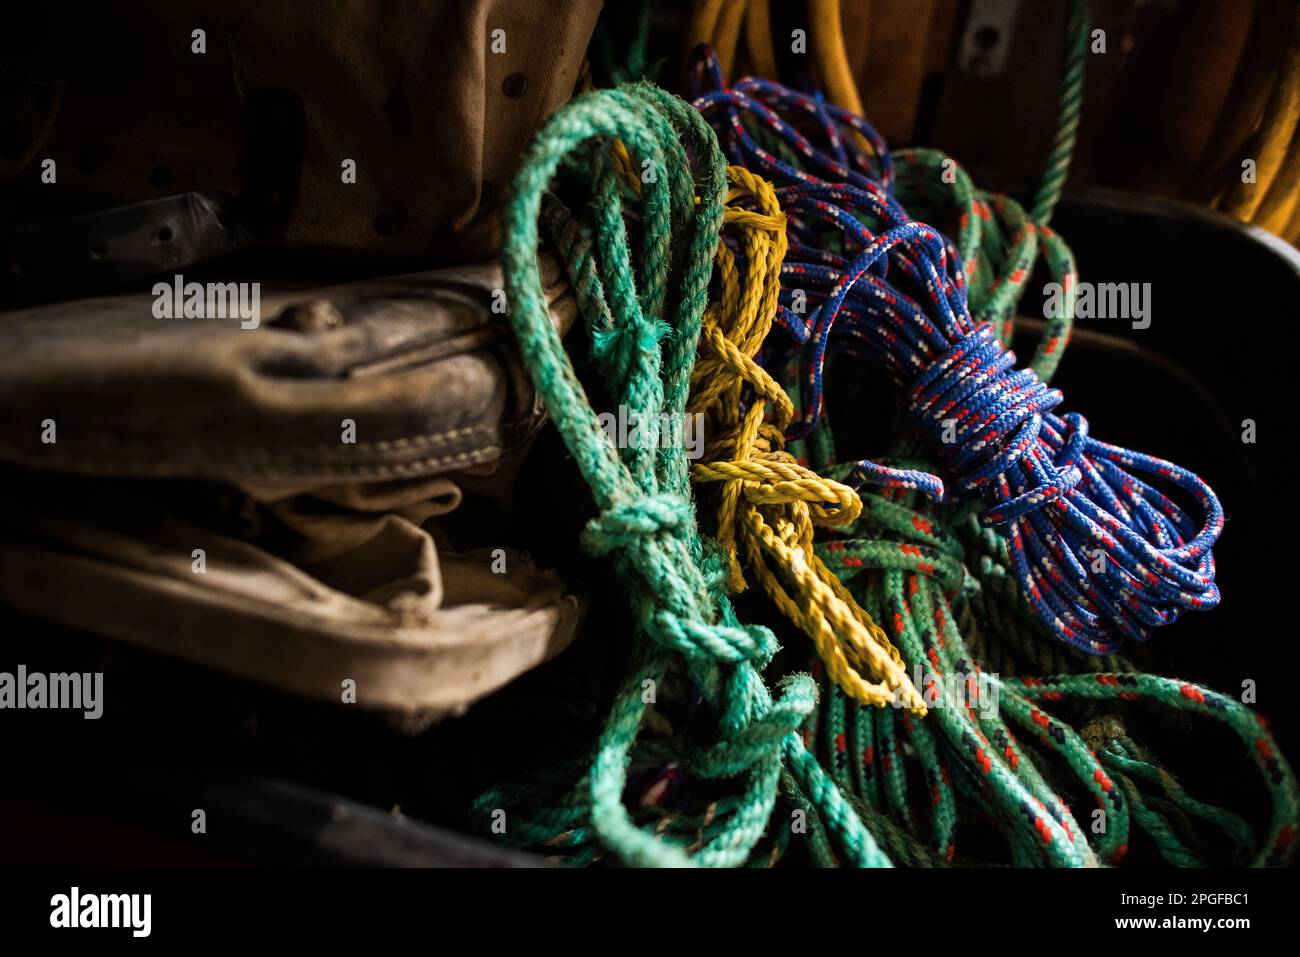 Bunte Seile, die in einer Scheune/Werkstatt auf einer Arbeitstasche befestigt sind Stockfoto